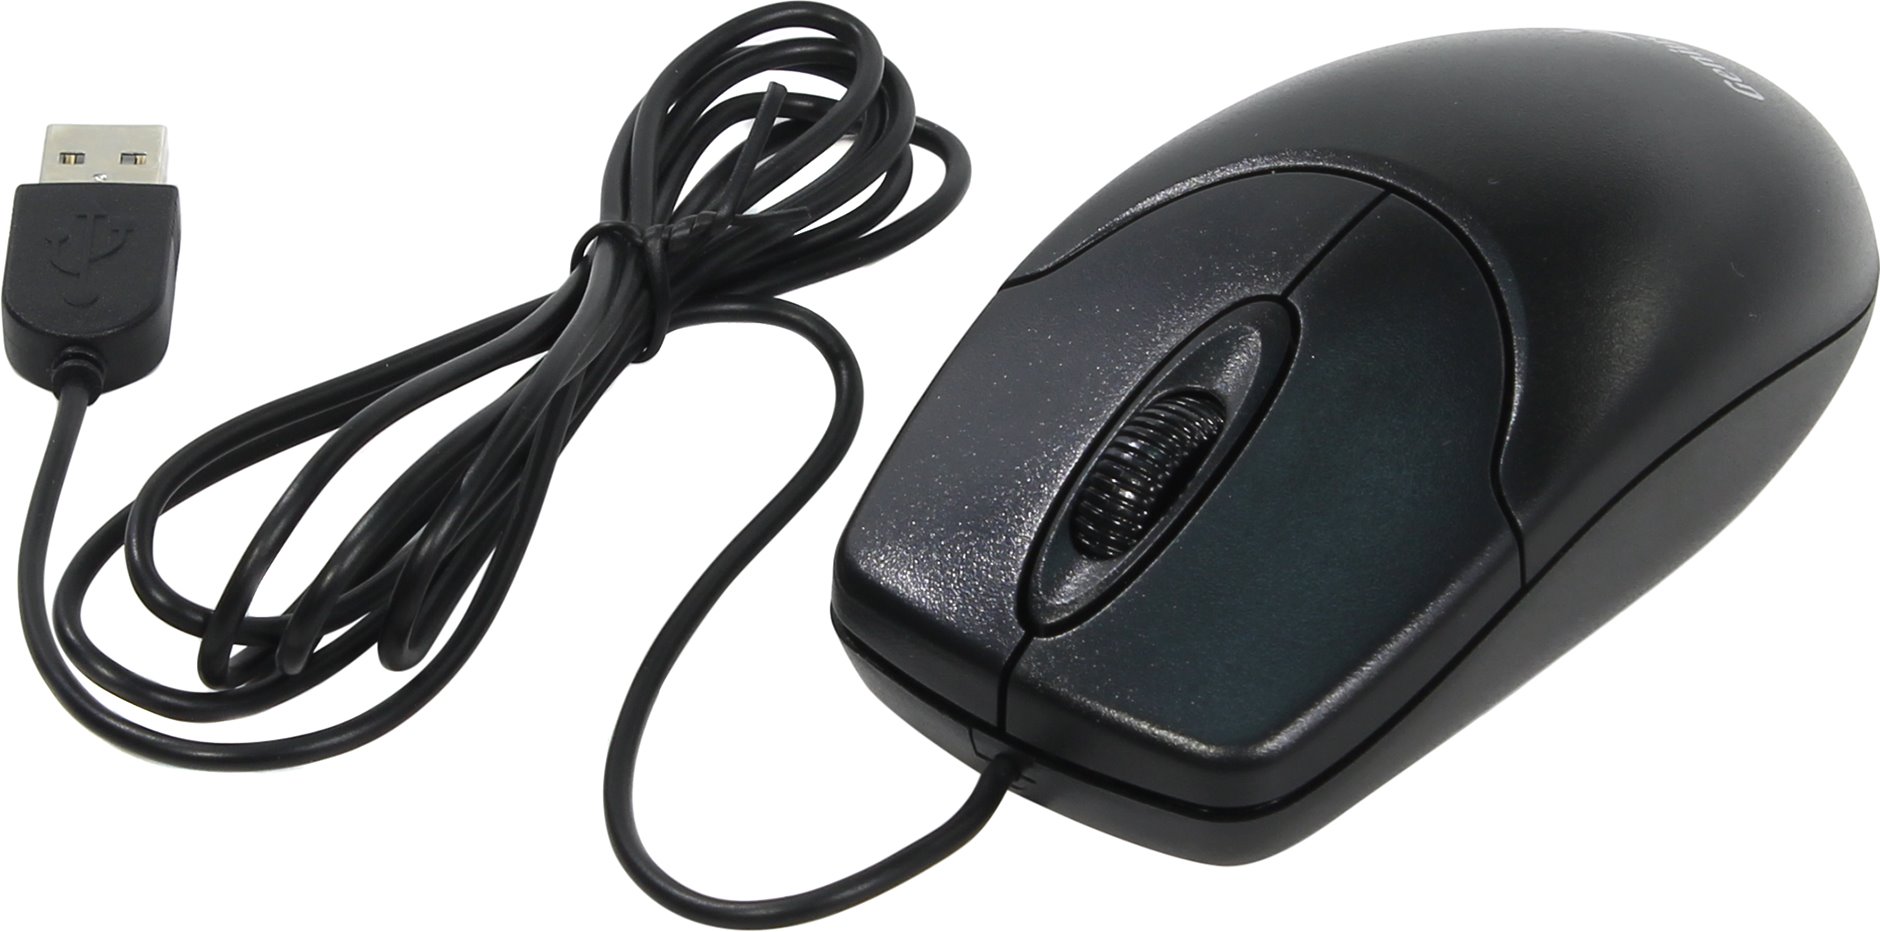 Мышь проводная Genius NetScroll 120 V2, 800dpi, оптическая светодиодная, USB, черный